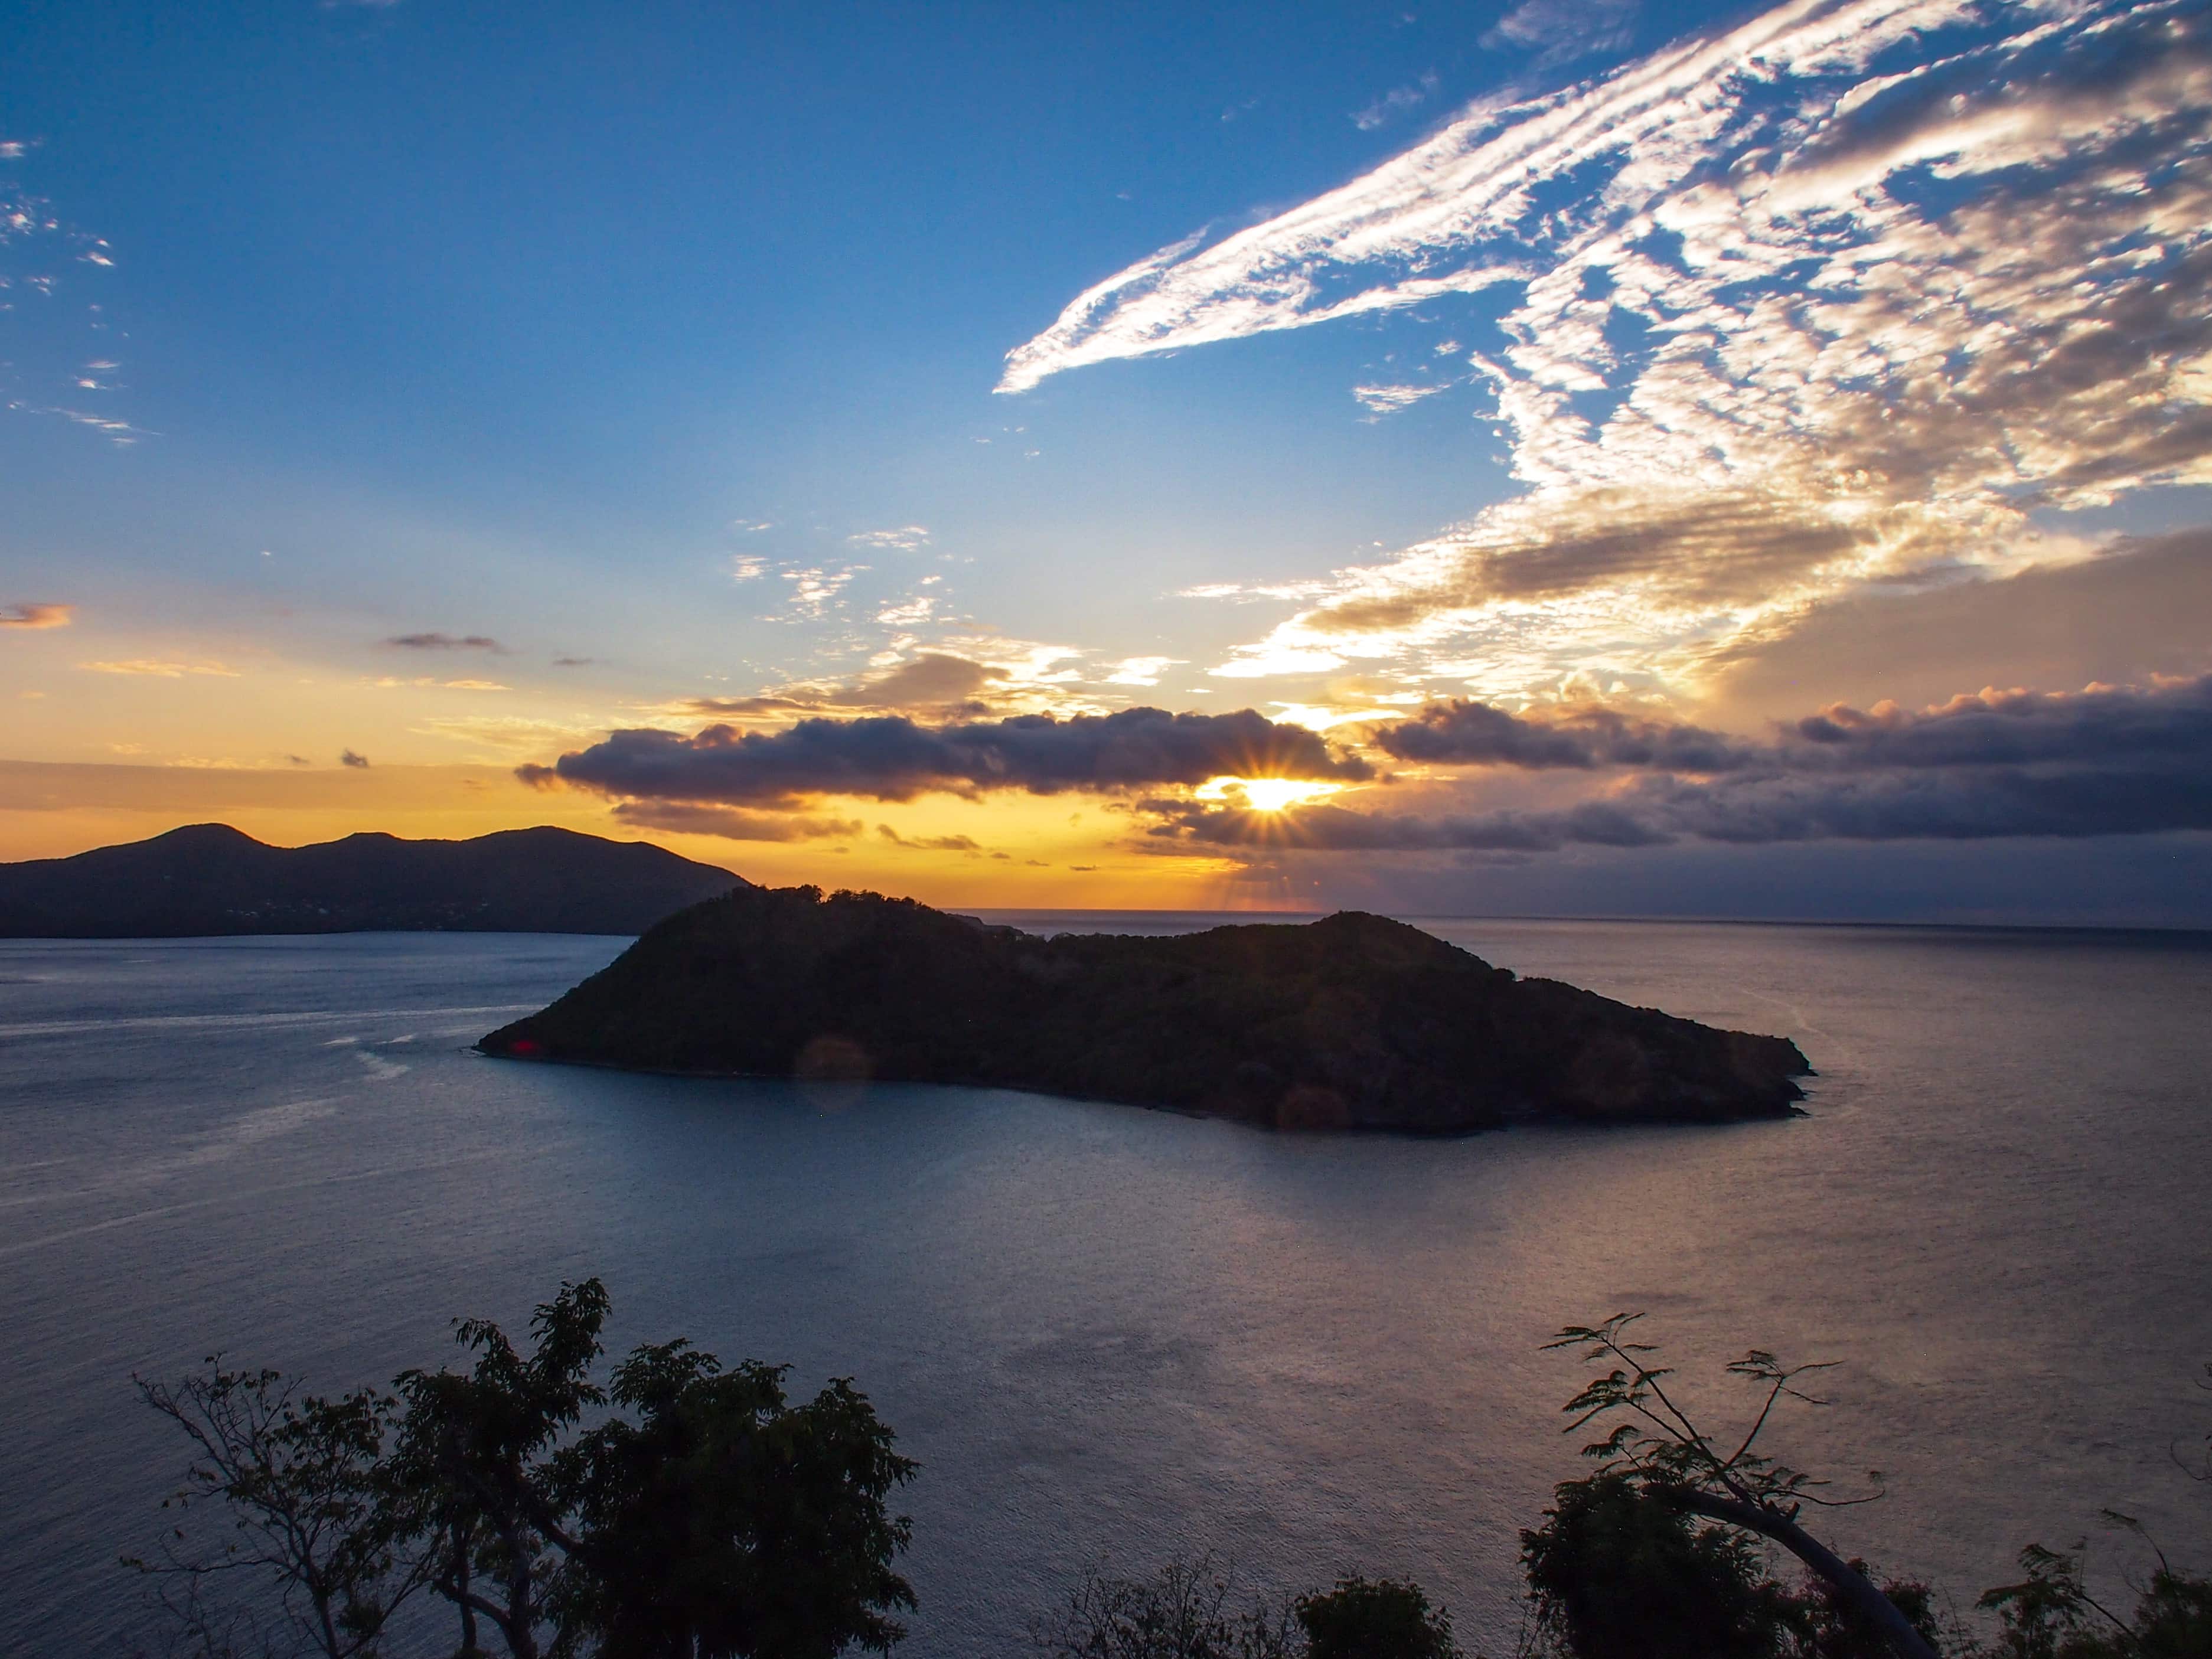 Îlet à Cabrit sunset, Guadeloupe | SBPR